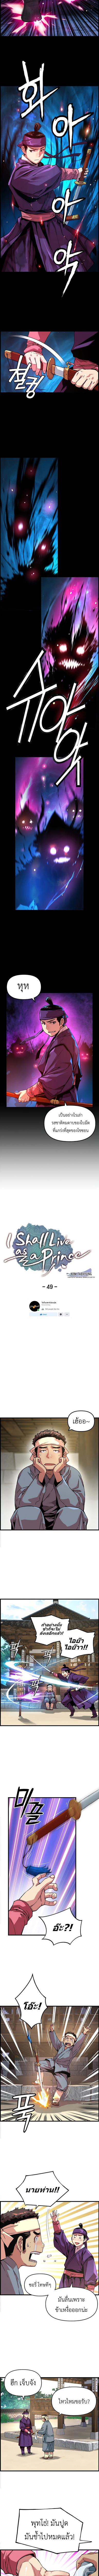 I Shall Live as a Prince 49 03